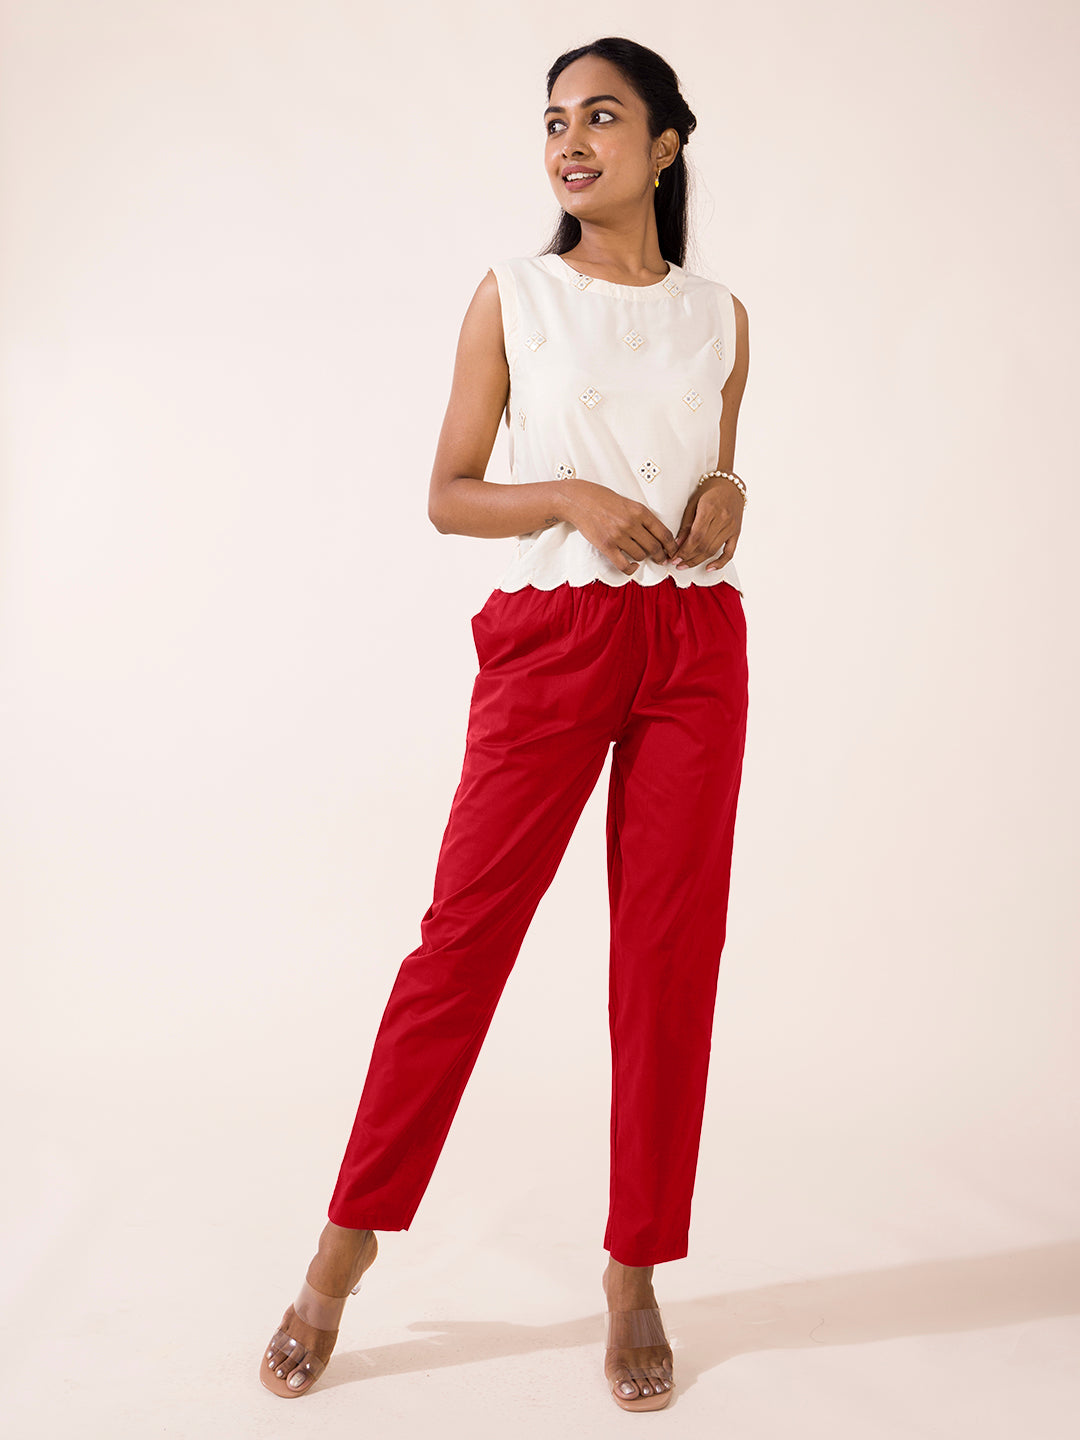 Cotton Pants for Women's  Solid Cherry Comfort Fit Cotton Pants - Go Colors